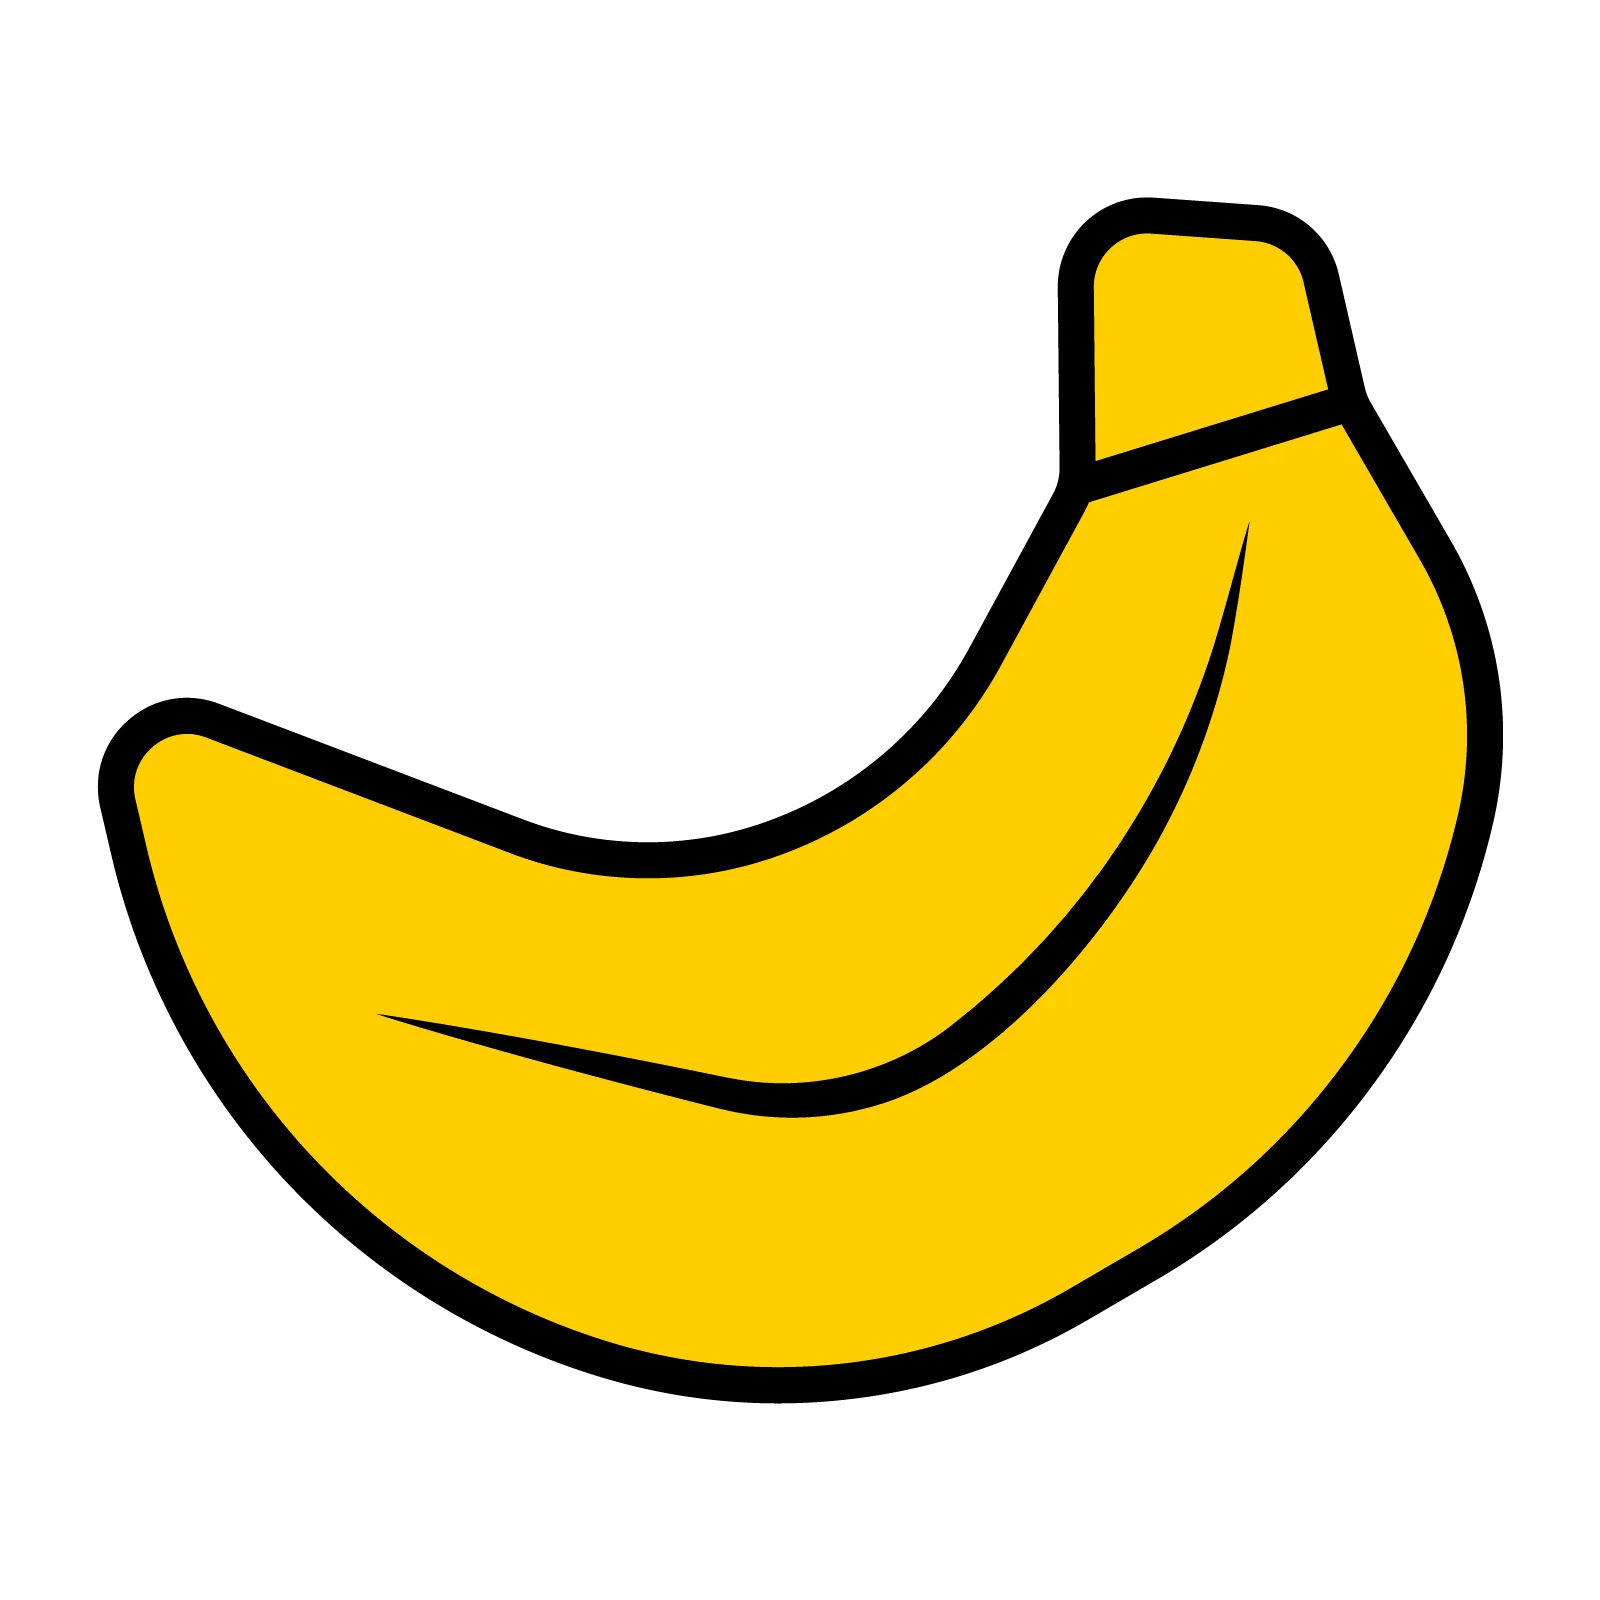 Banane Art vectoriel, icônes et graphiques à télécharger gratuitement